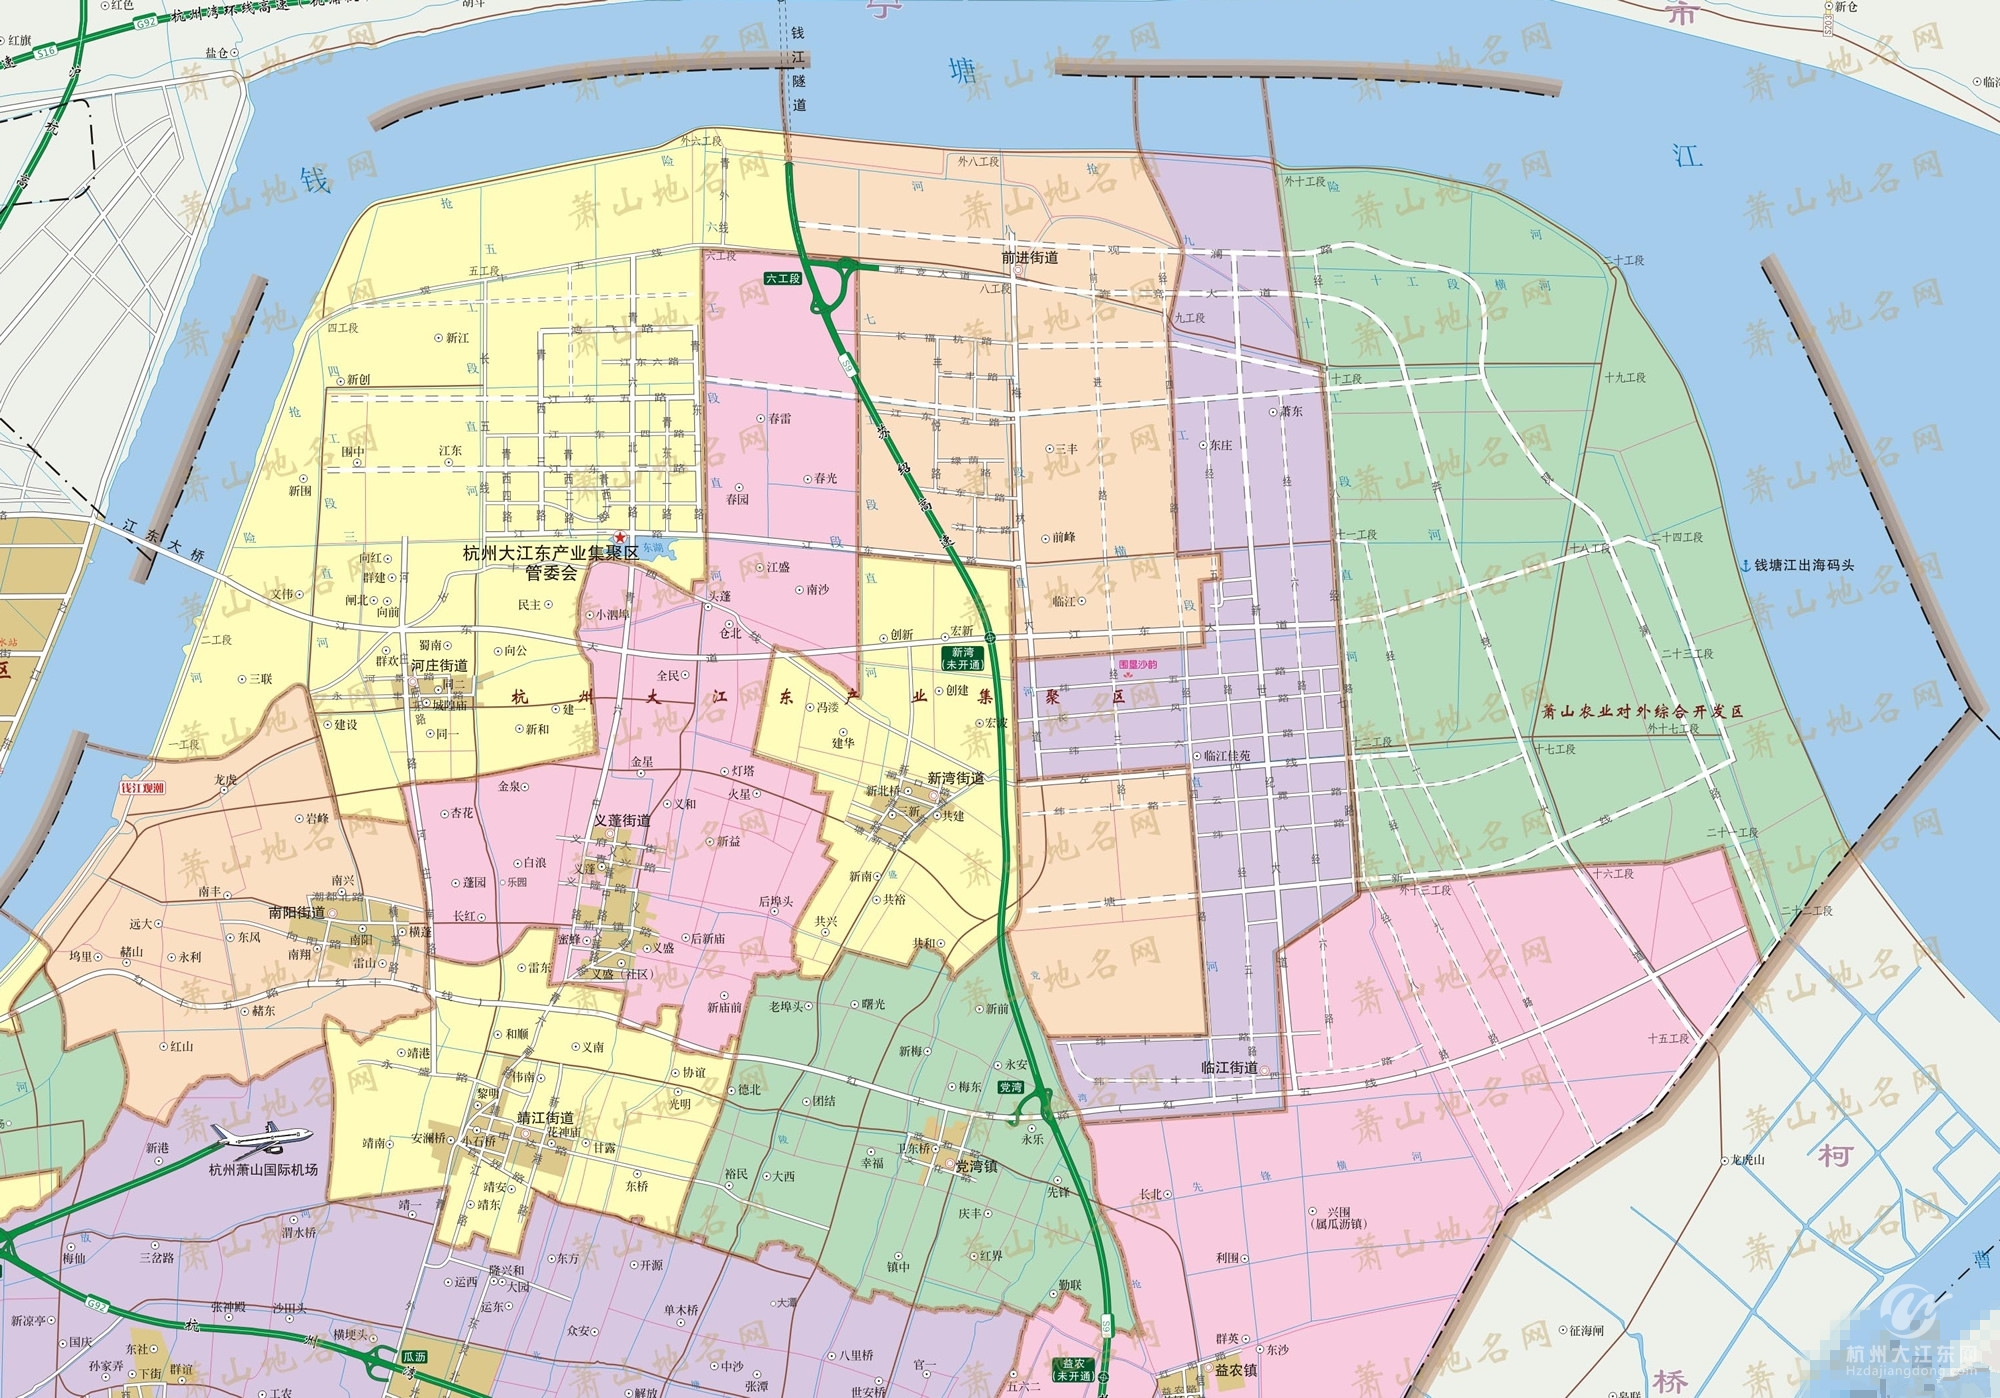 萧山地名网发布了萧山区划地名图,其中包含大江东区域图片